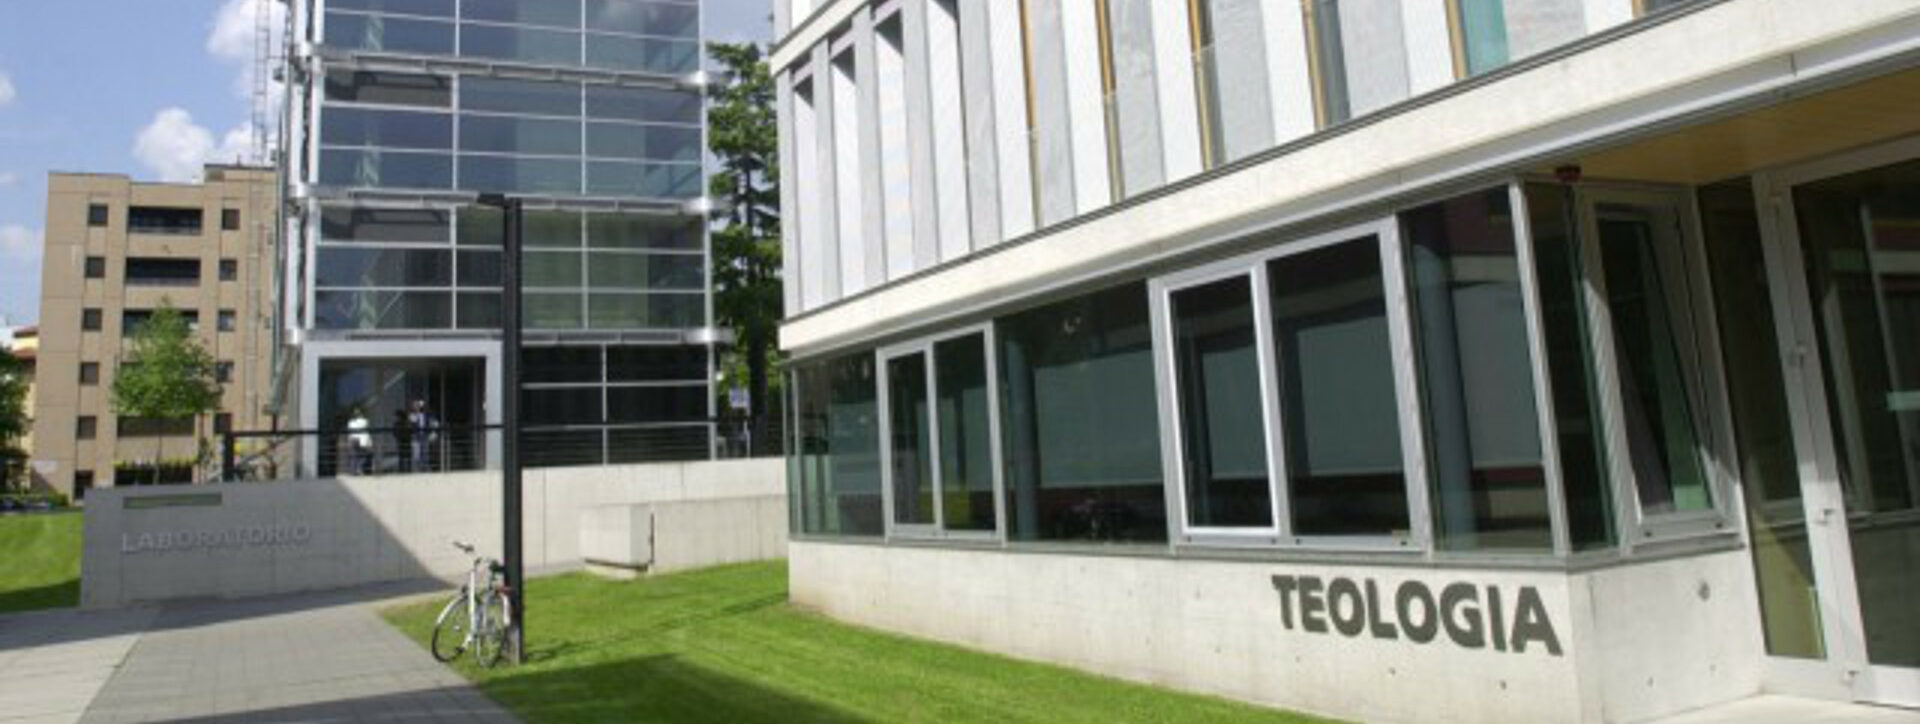 La sede della Facoltà di Teologia di Lugano nel campus USI.